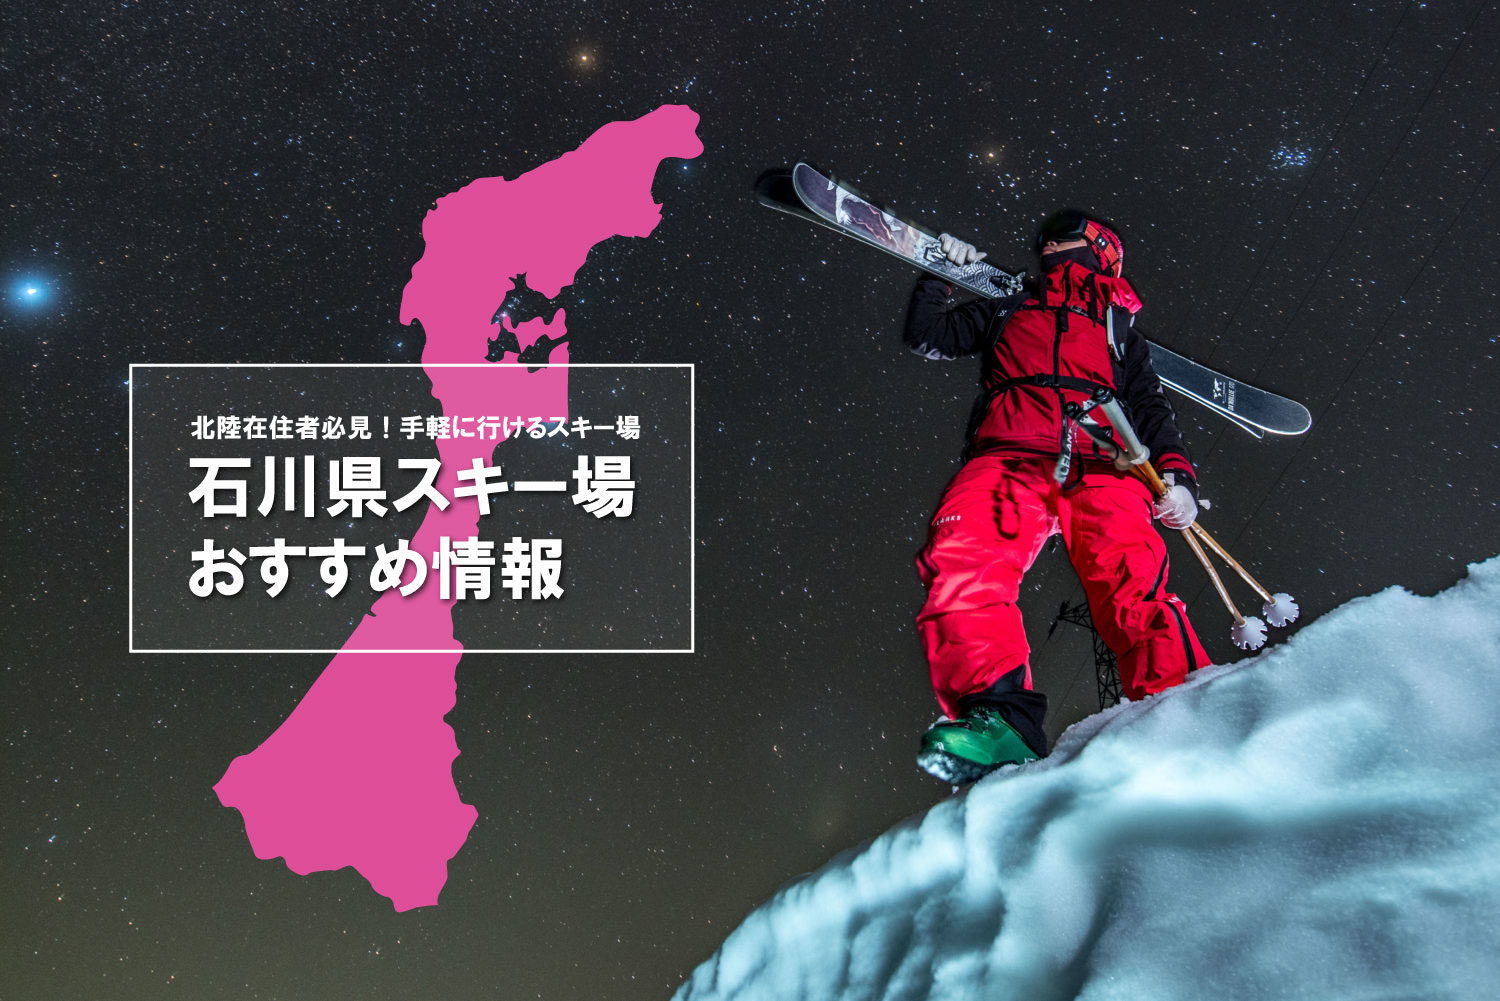 石川県のスキー場情報 北陸在住者必見 手軽に行けるスキー場をご紹介